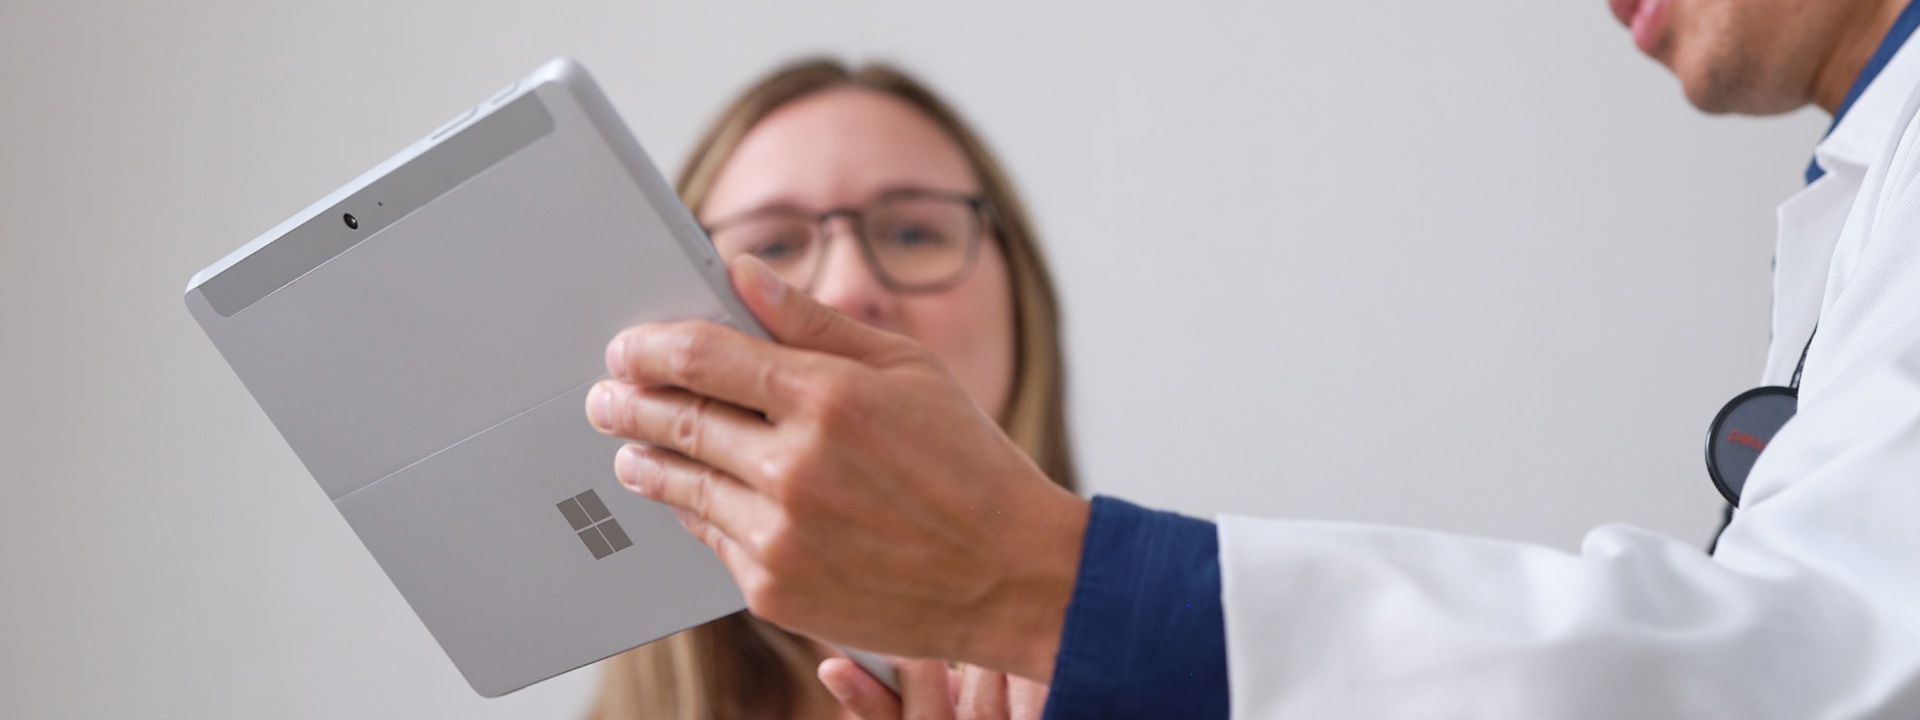 Ein Arzt zeigt einem Patienten seinen Behandlungsplan auf einem Surface Pro